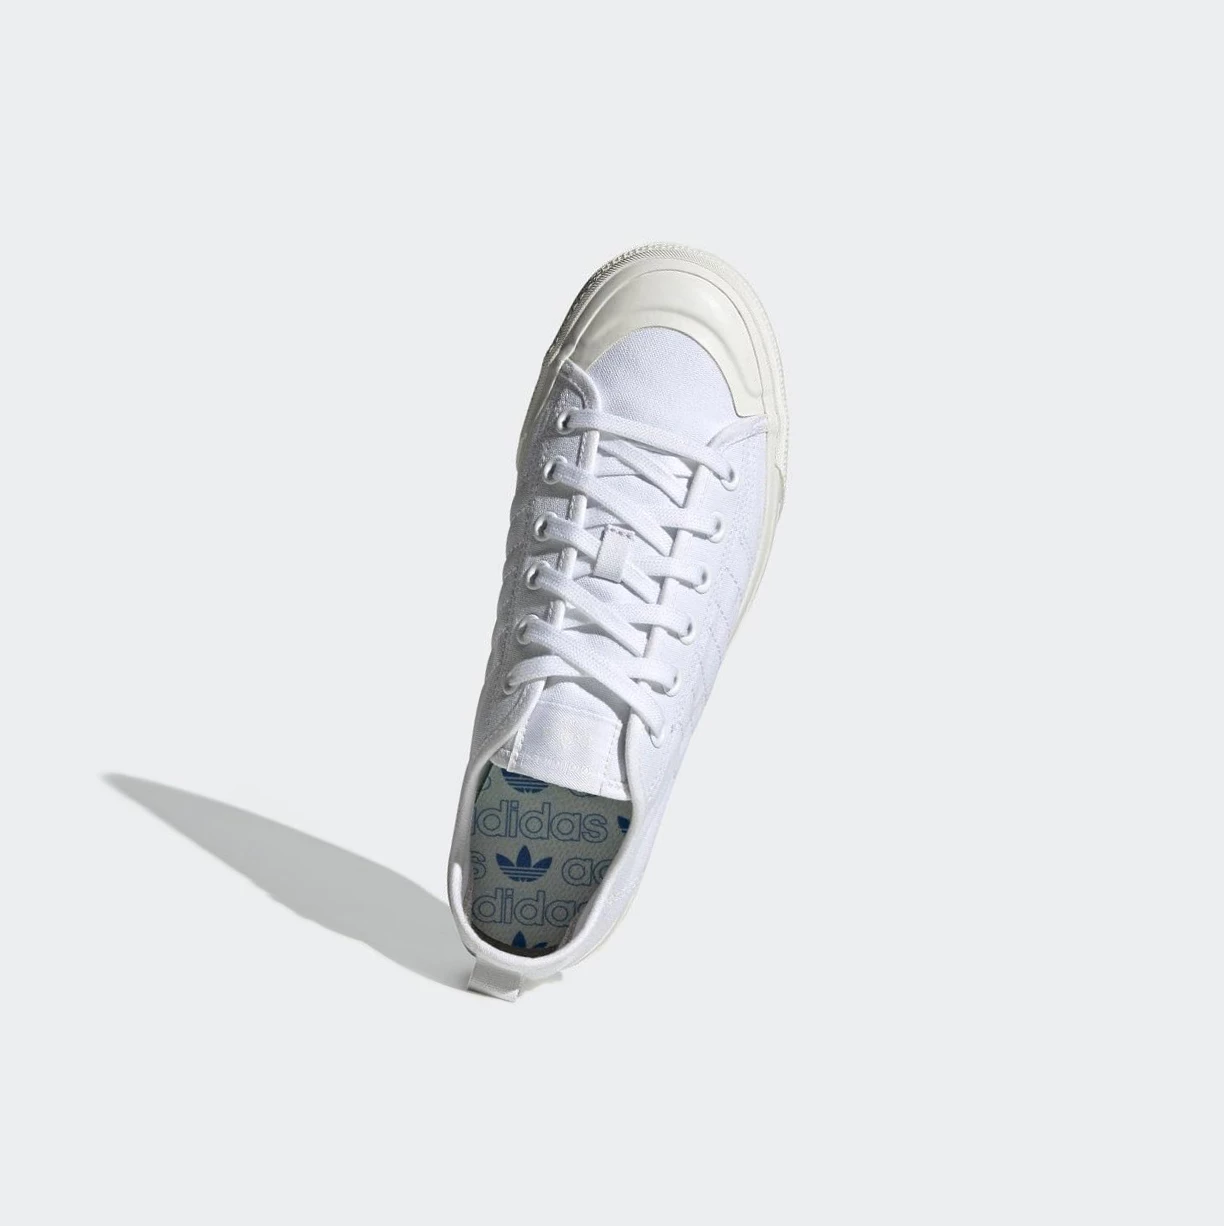 Originálne Topánky Adidas Nizza RF Damske Biele | 452SKDSPQJV